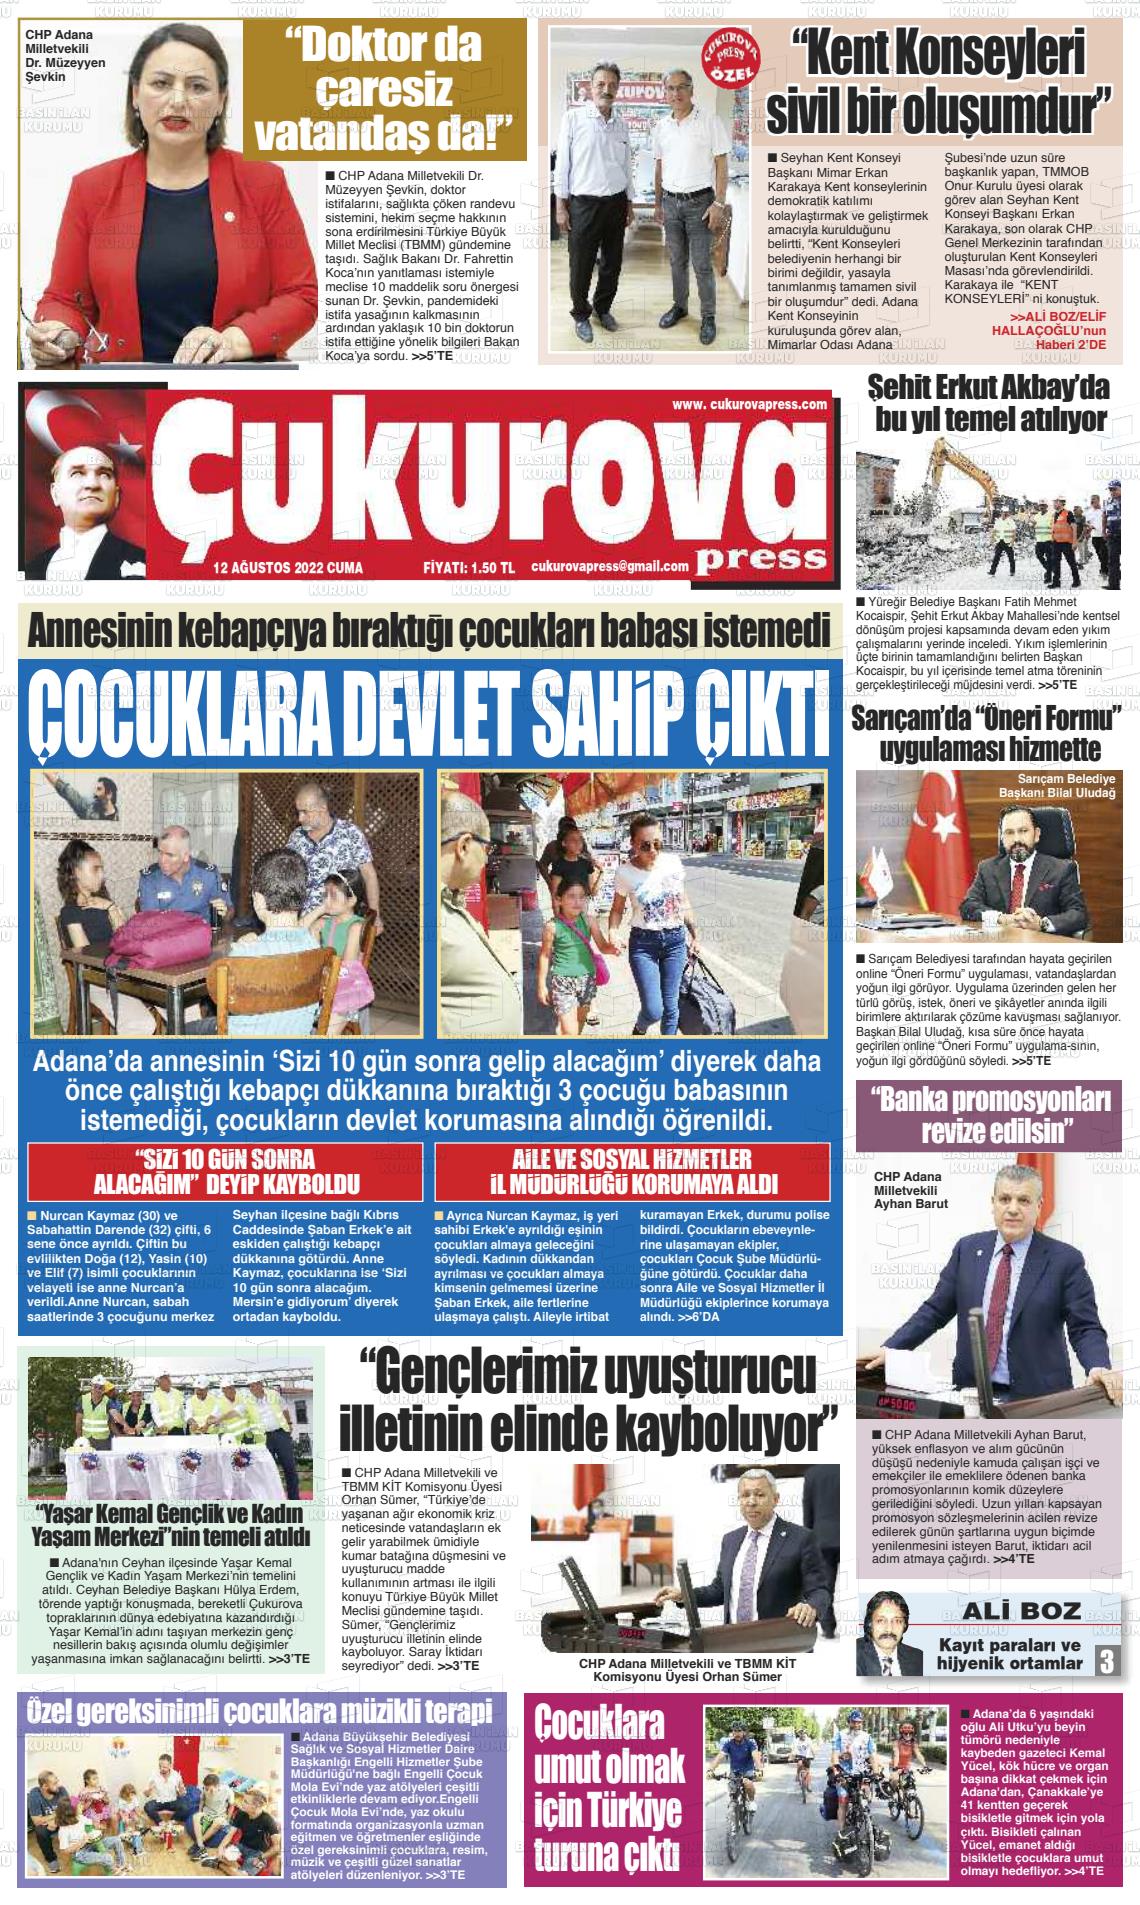 12 Ağustos 2022 Çukurova Press Gazete Manşeti